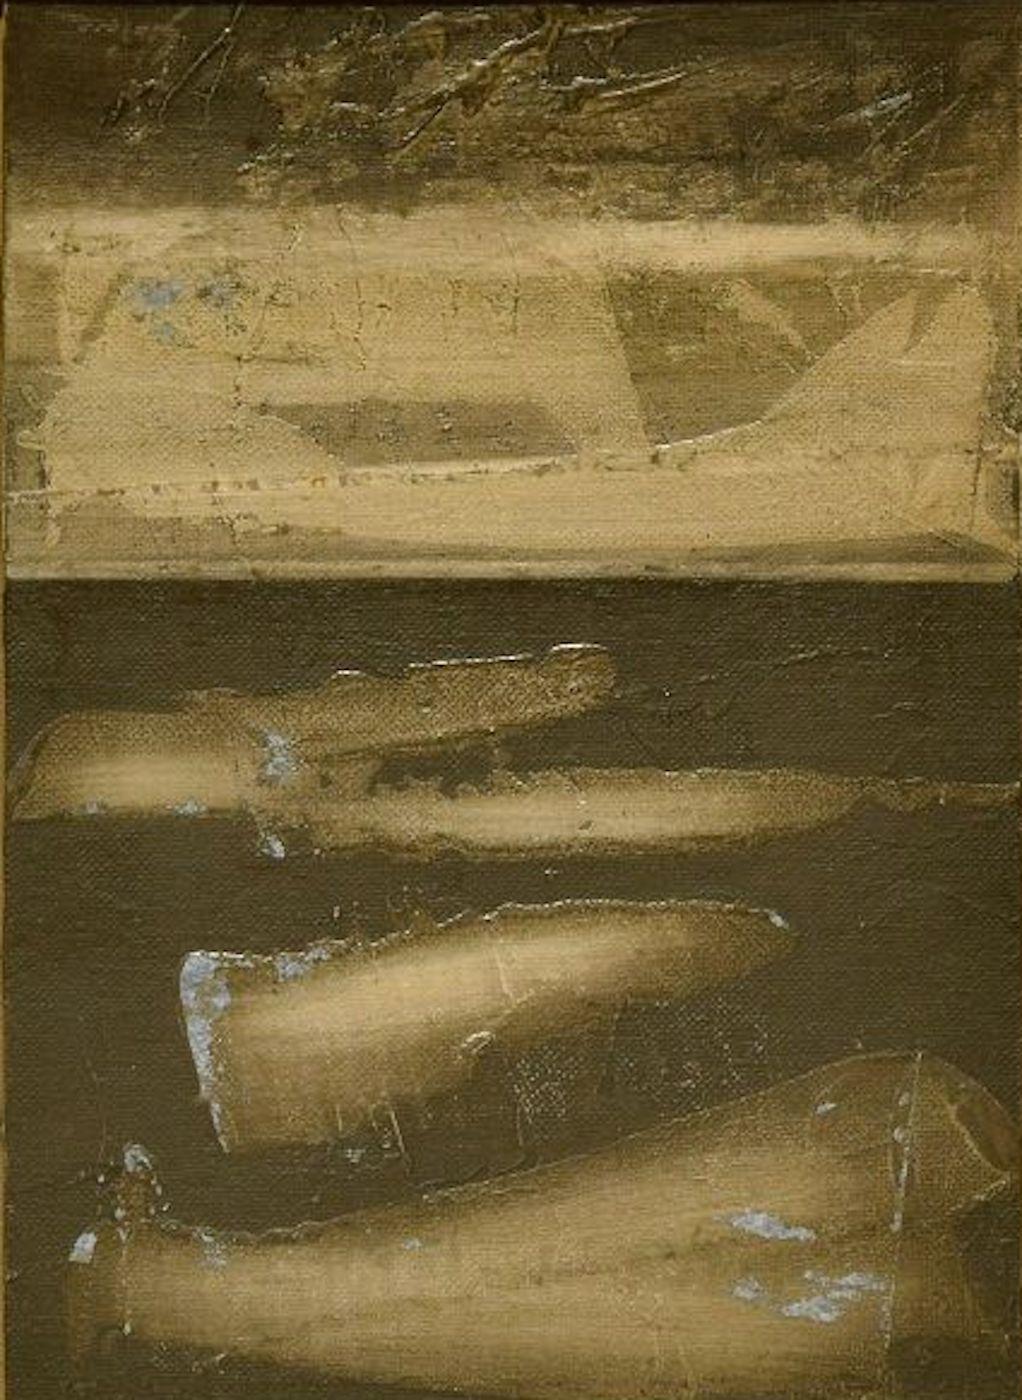 Abmessungen des Bildes: 29 x 19 cm.

Die schwarze Komposition ist ein wunderschönes Original in Mischtechnik auf Leinwand von Mario Sinisca (Neapel, 1929), einem italienischen Meister der Nachkriegszeit, der sich keiner künstlerischen Strömung